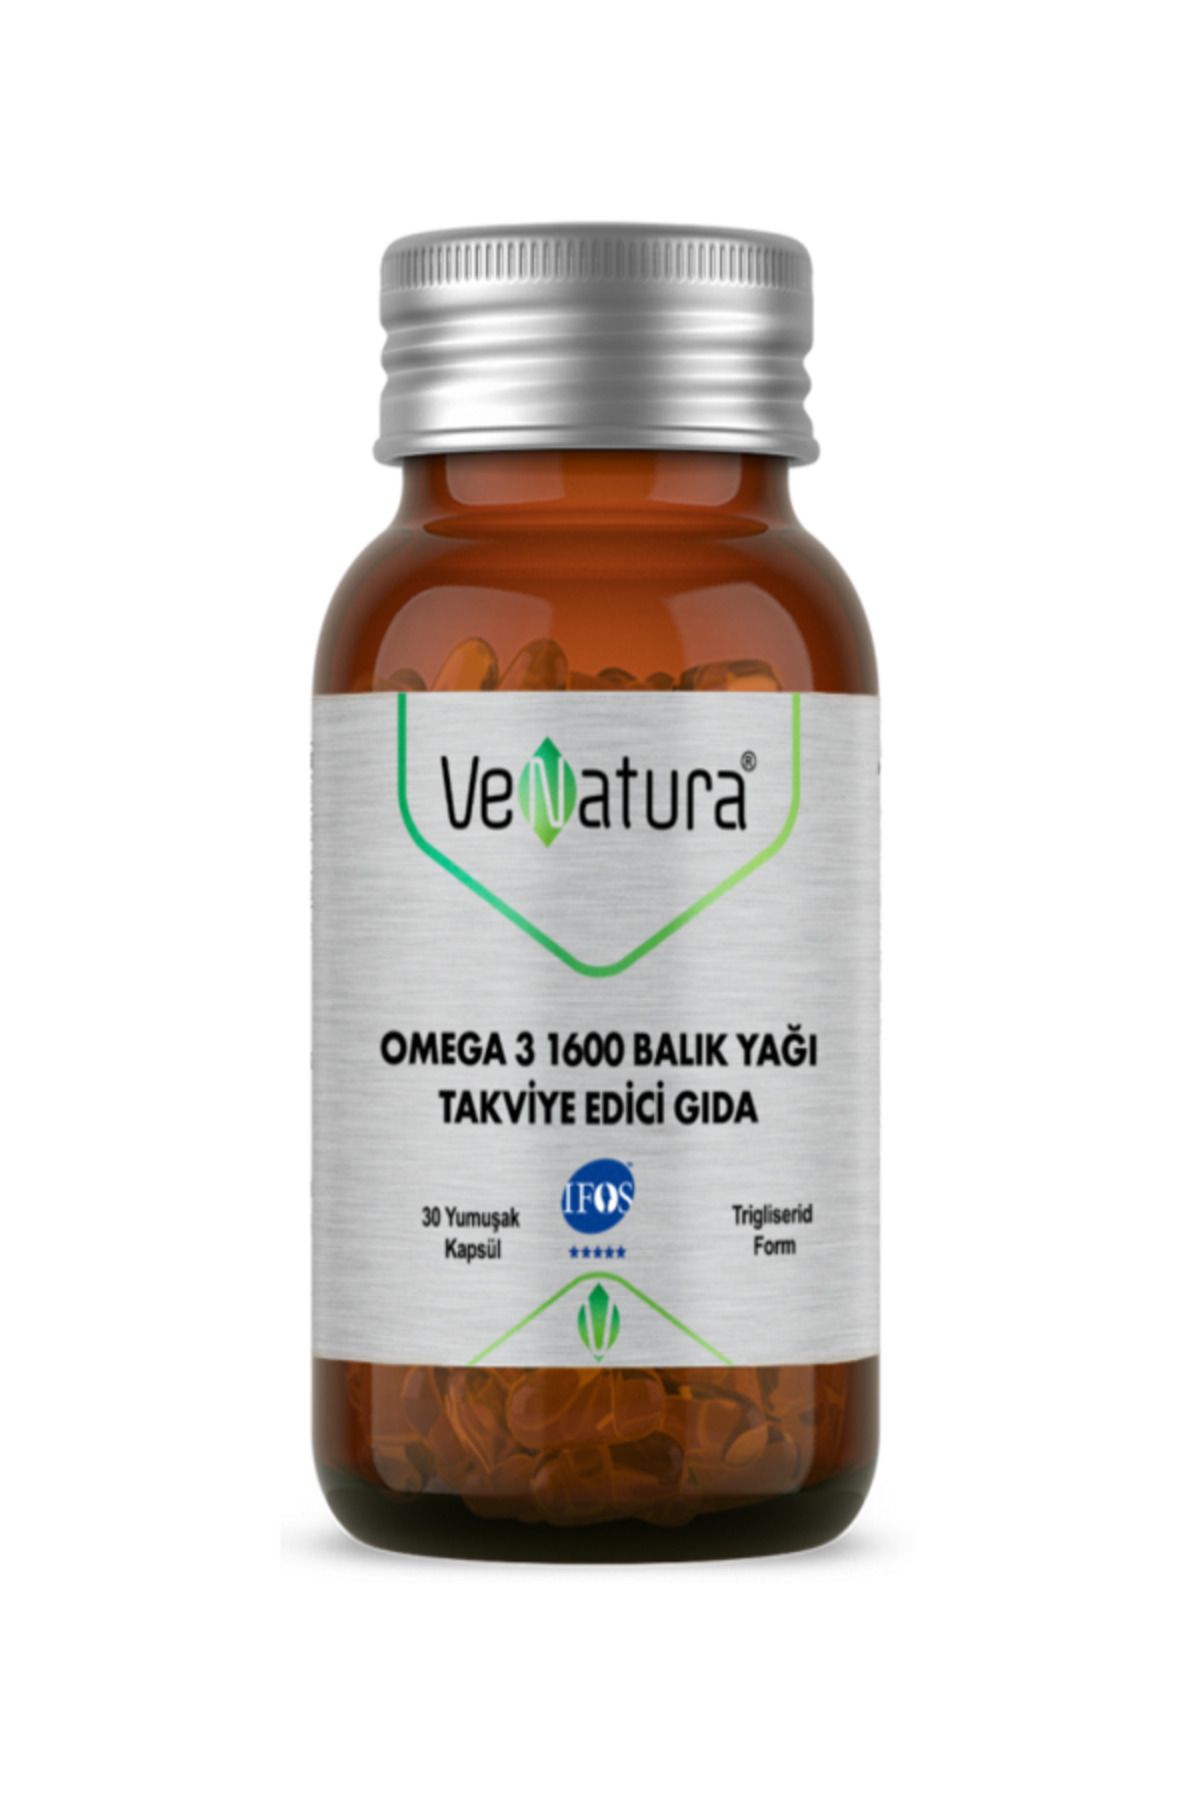 Venatura Omega 3 1600 Balık Yağı